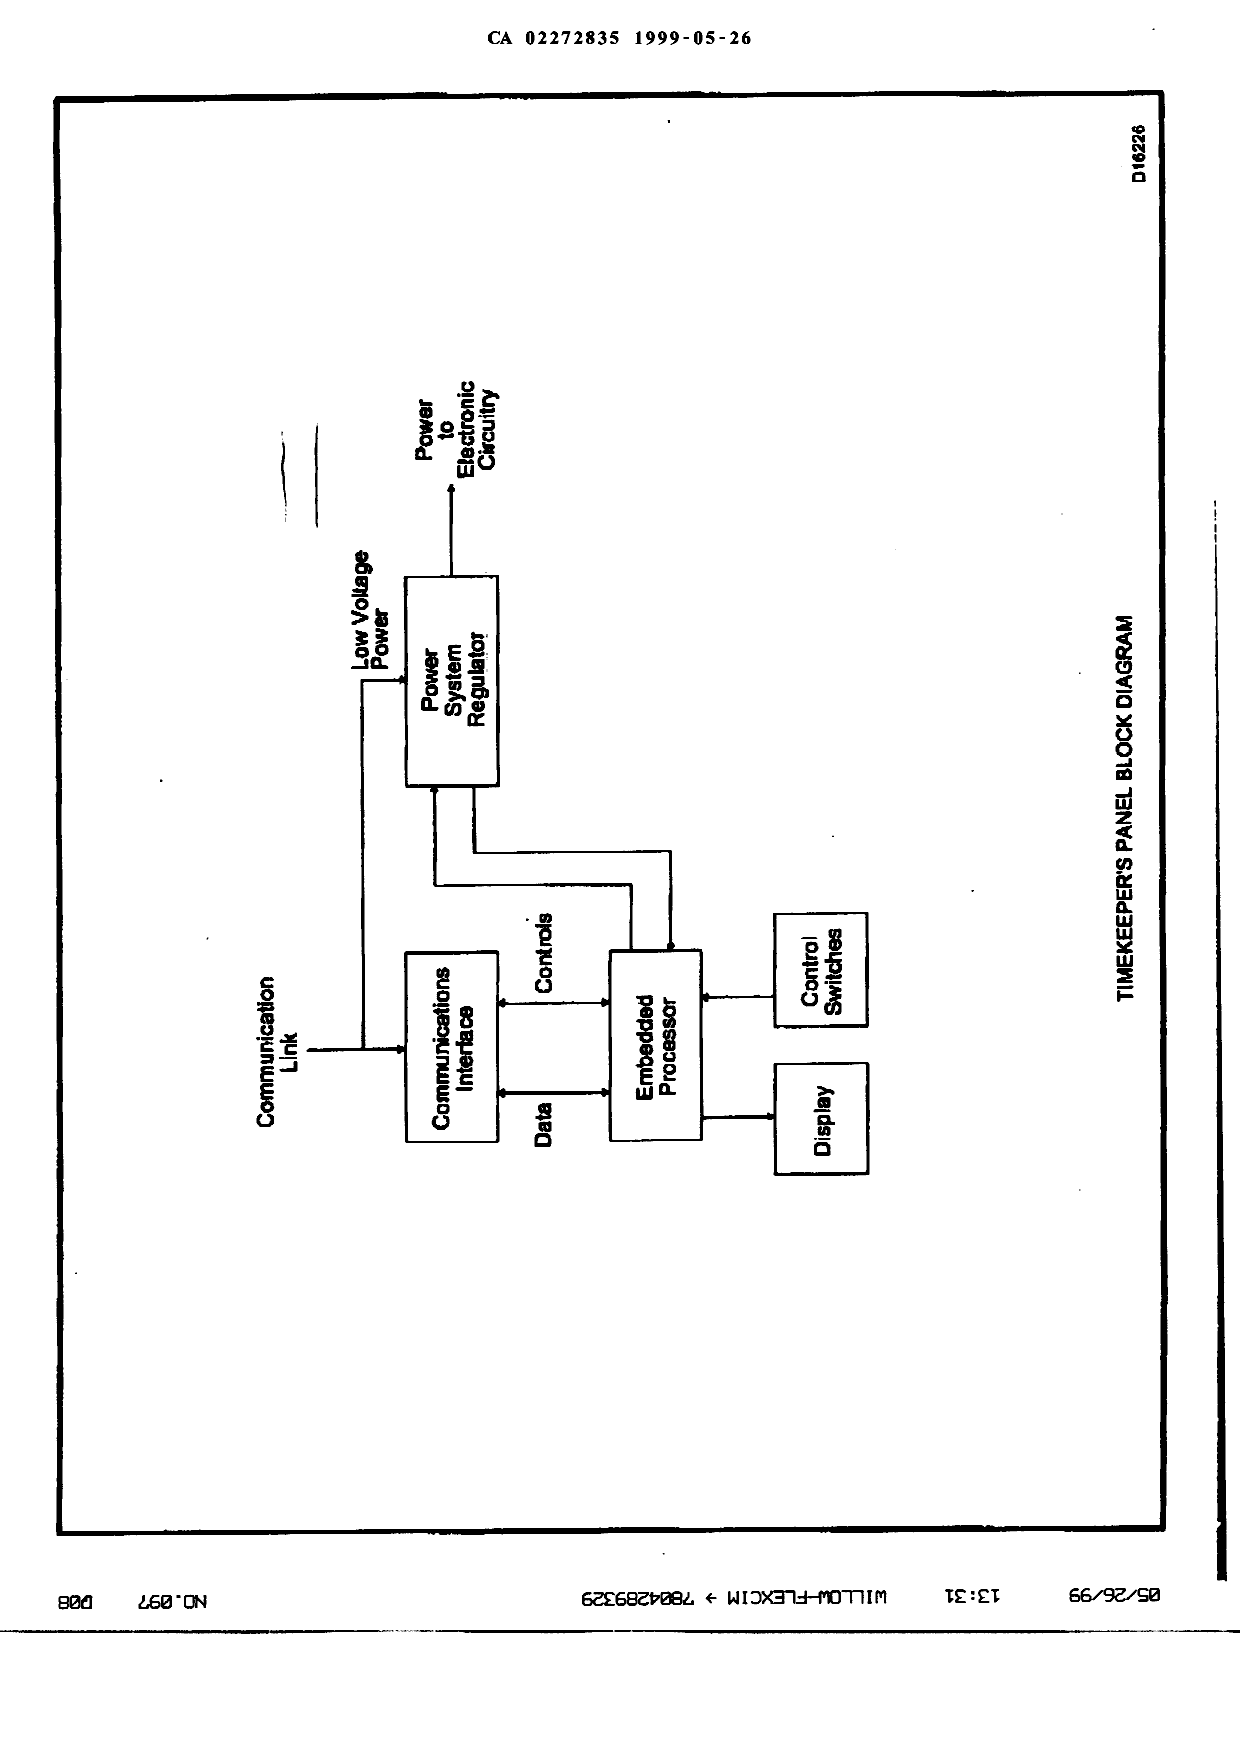 Document de brevet canadien 2272835. Dessins 19981226. Image 7 de 7